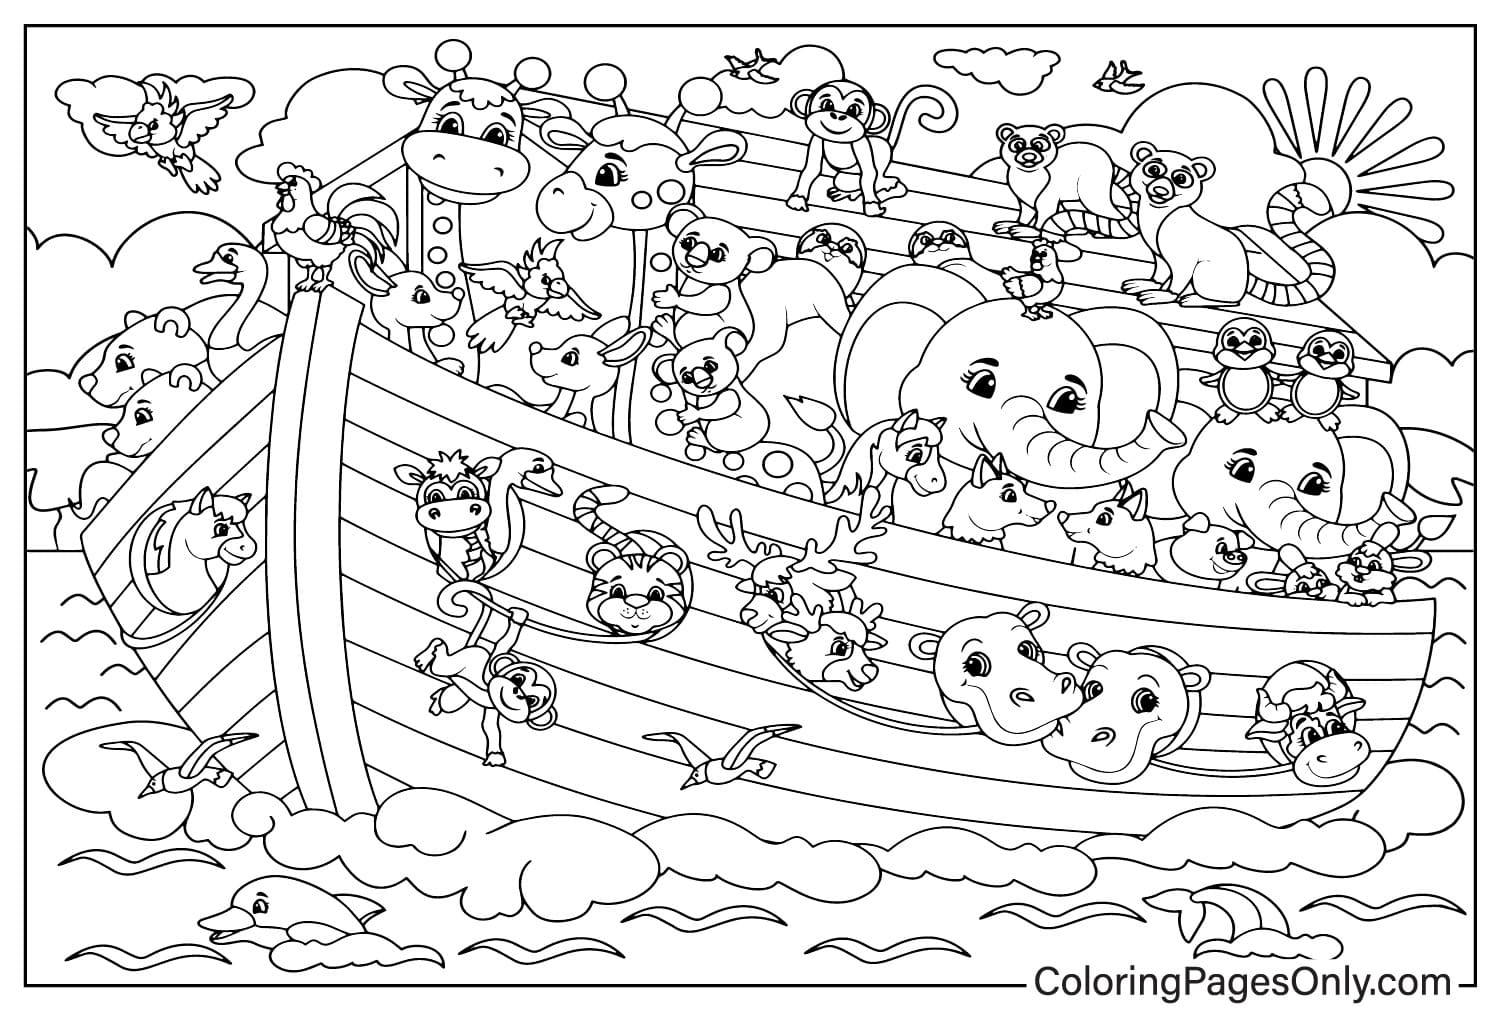 Hoja para colorear de dibujos animados simples de Noé con un arca llena de animales del Arca de Noé